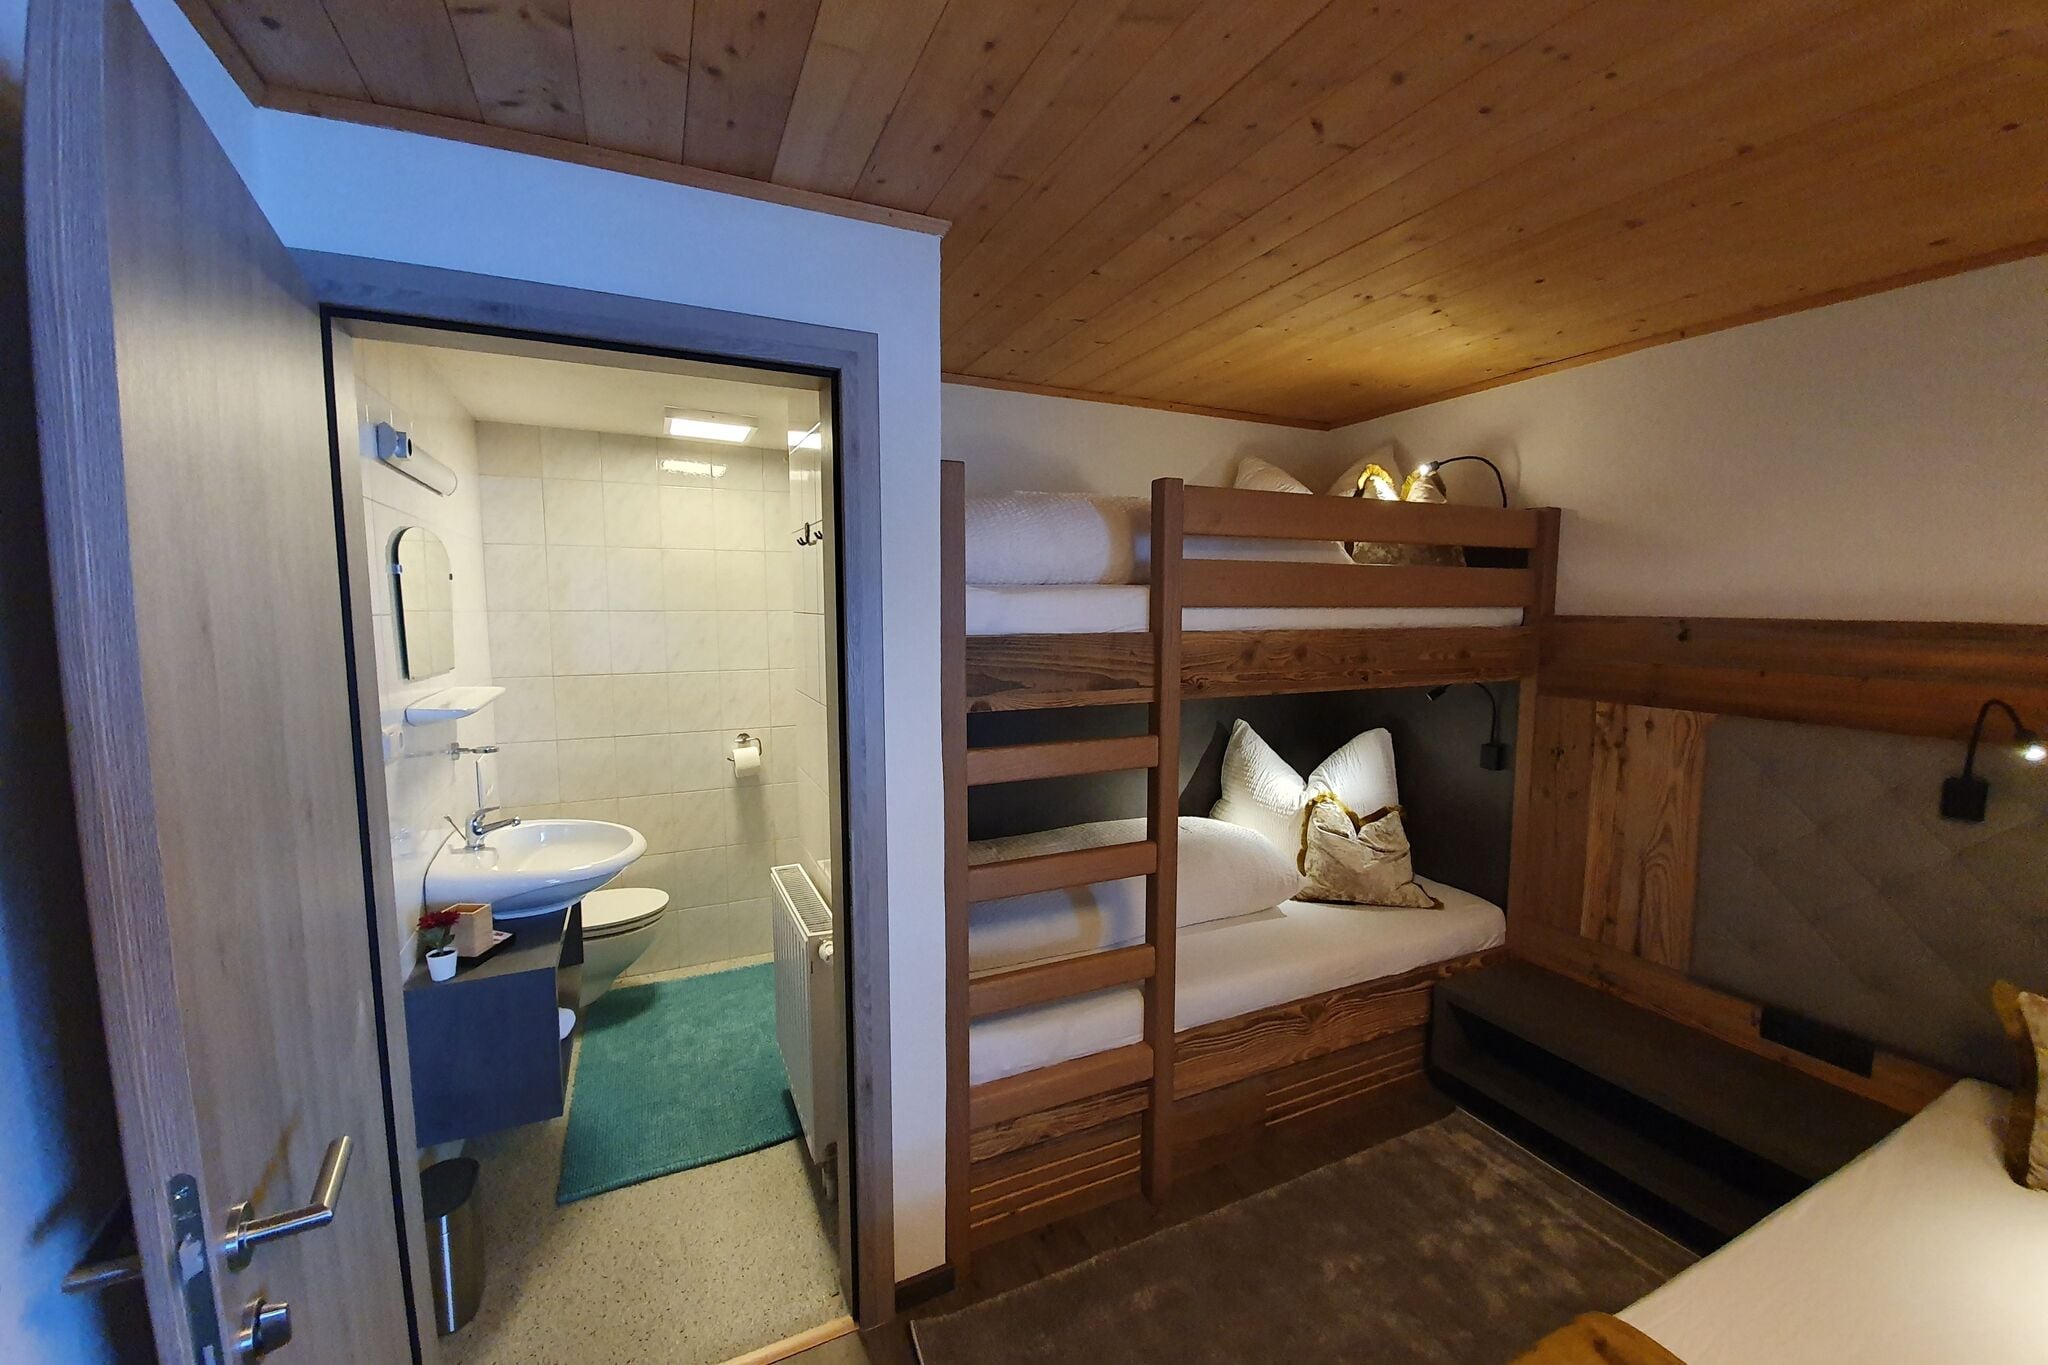 Appartement in Kaltenbach Tyrol bij de kale ski